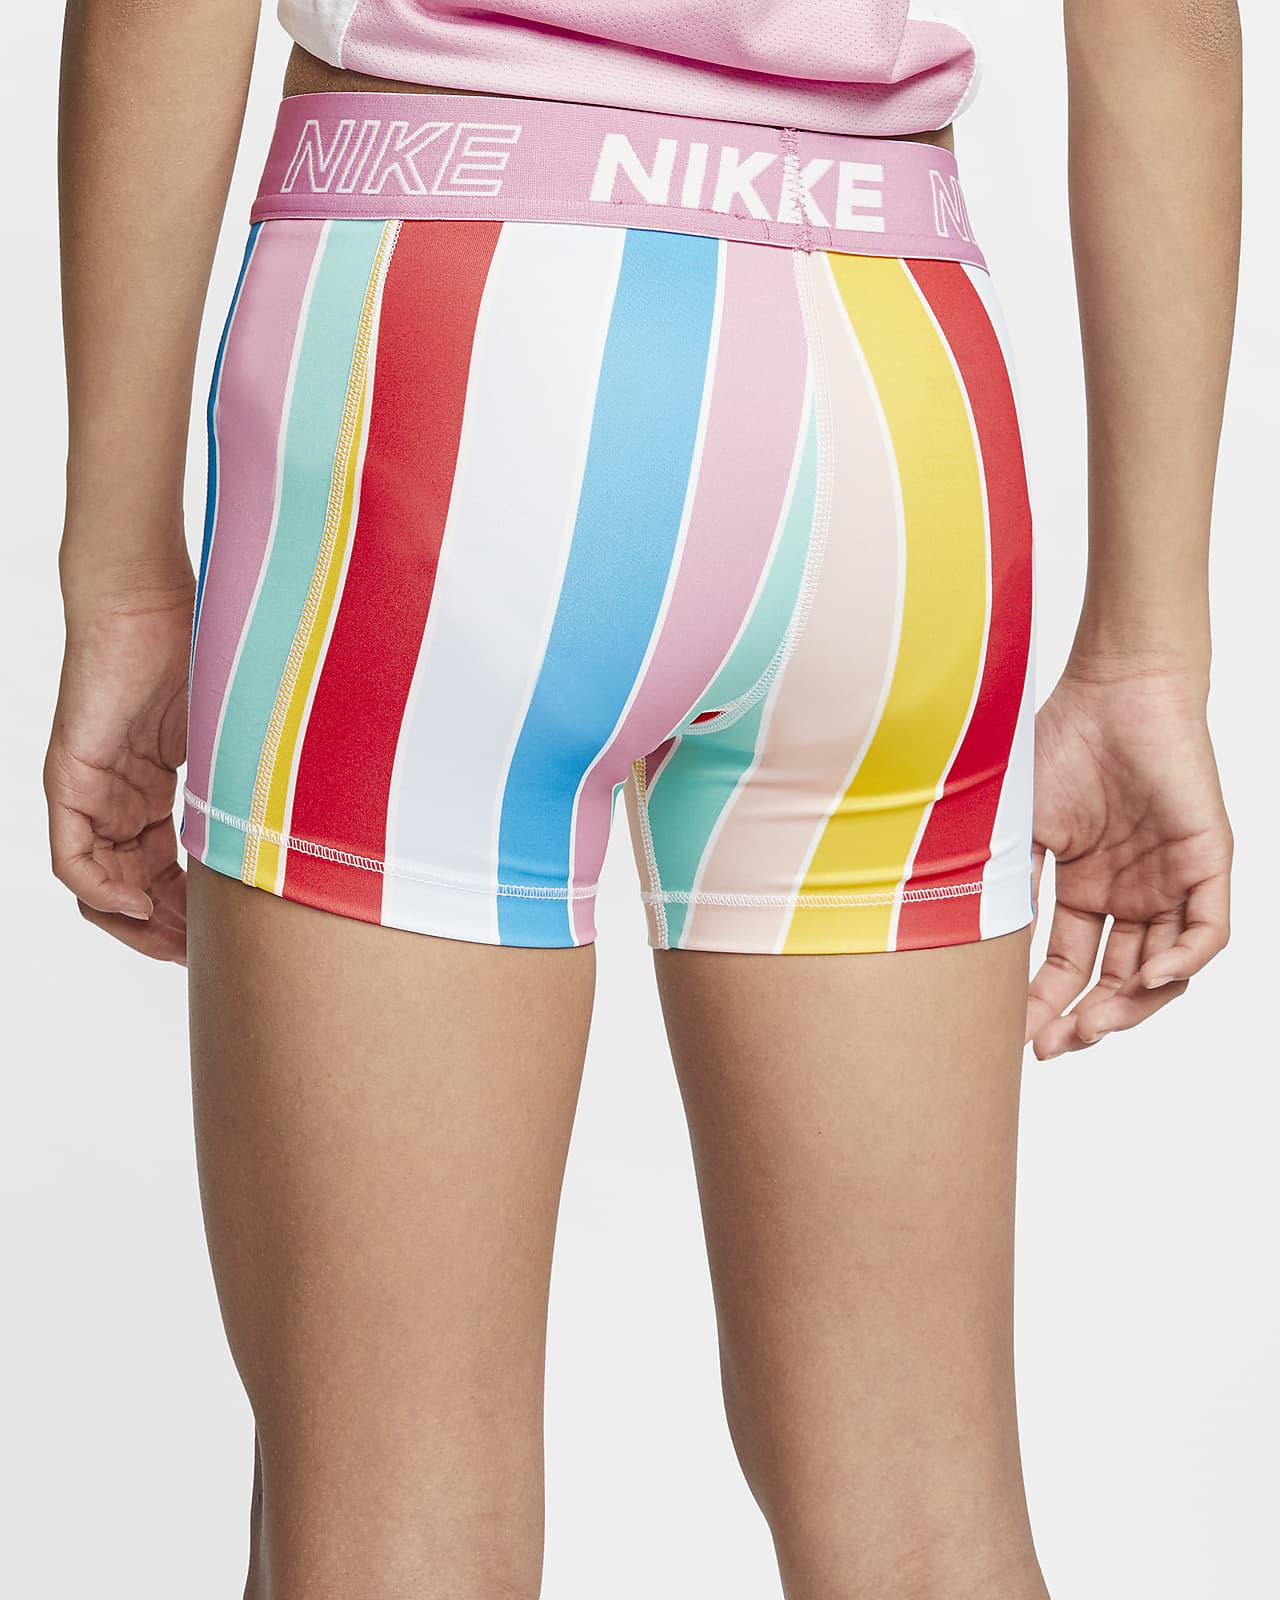 nike pro shorts girls